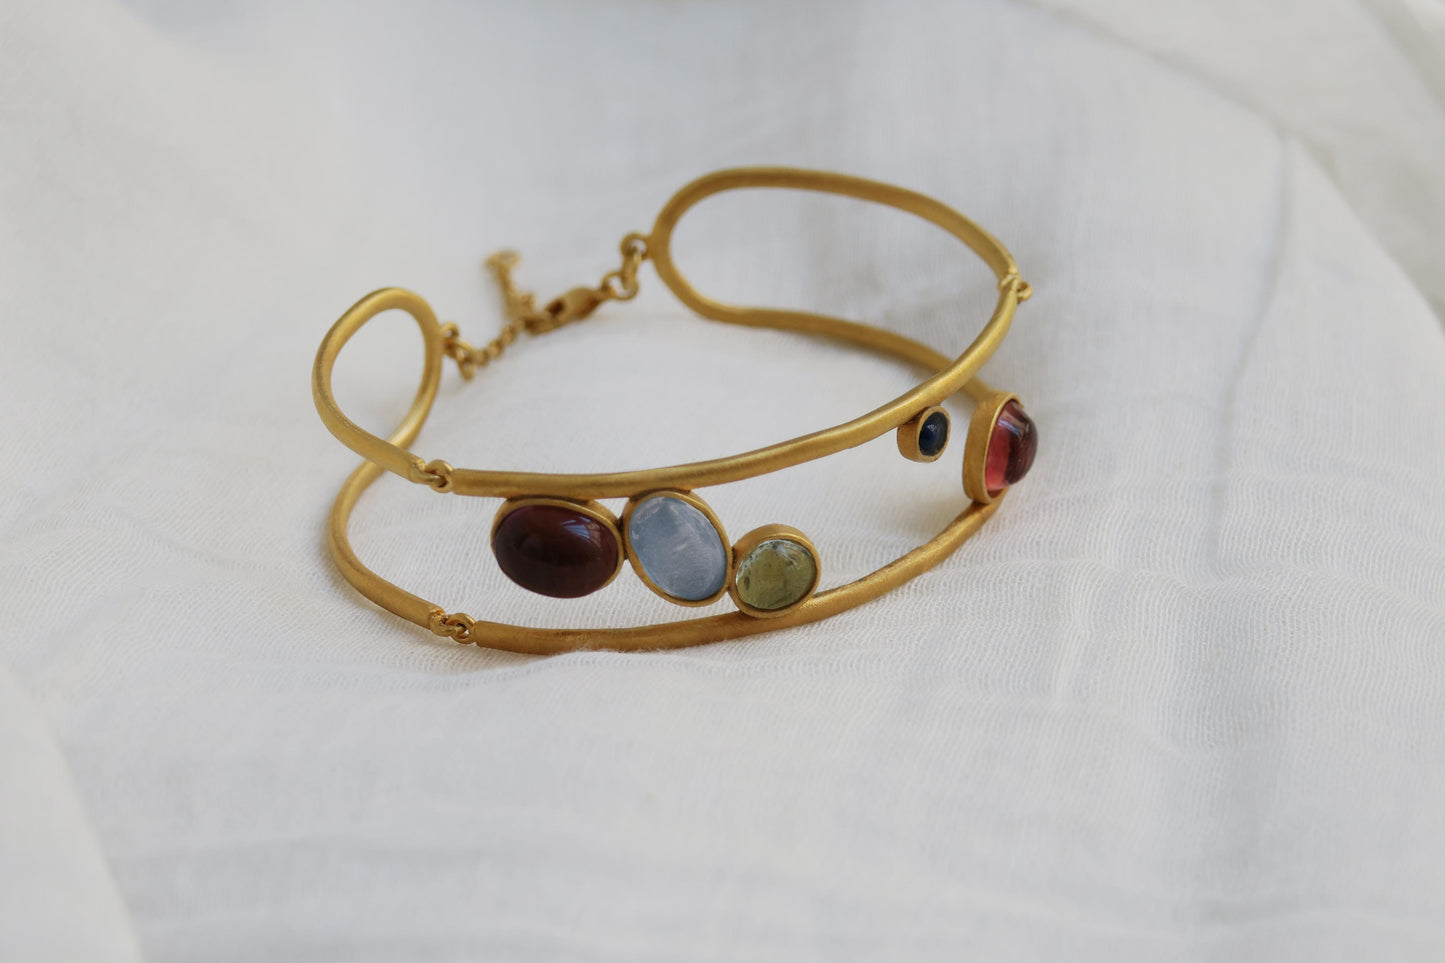 Alegria gold bracelet by Carme Fàbregas